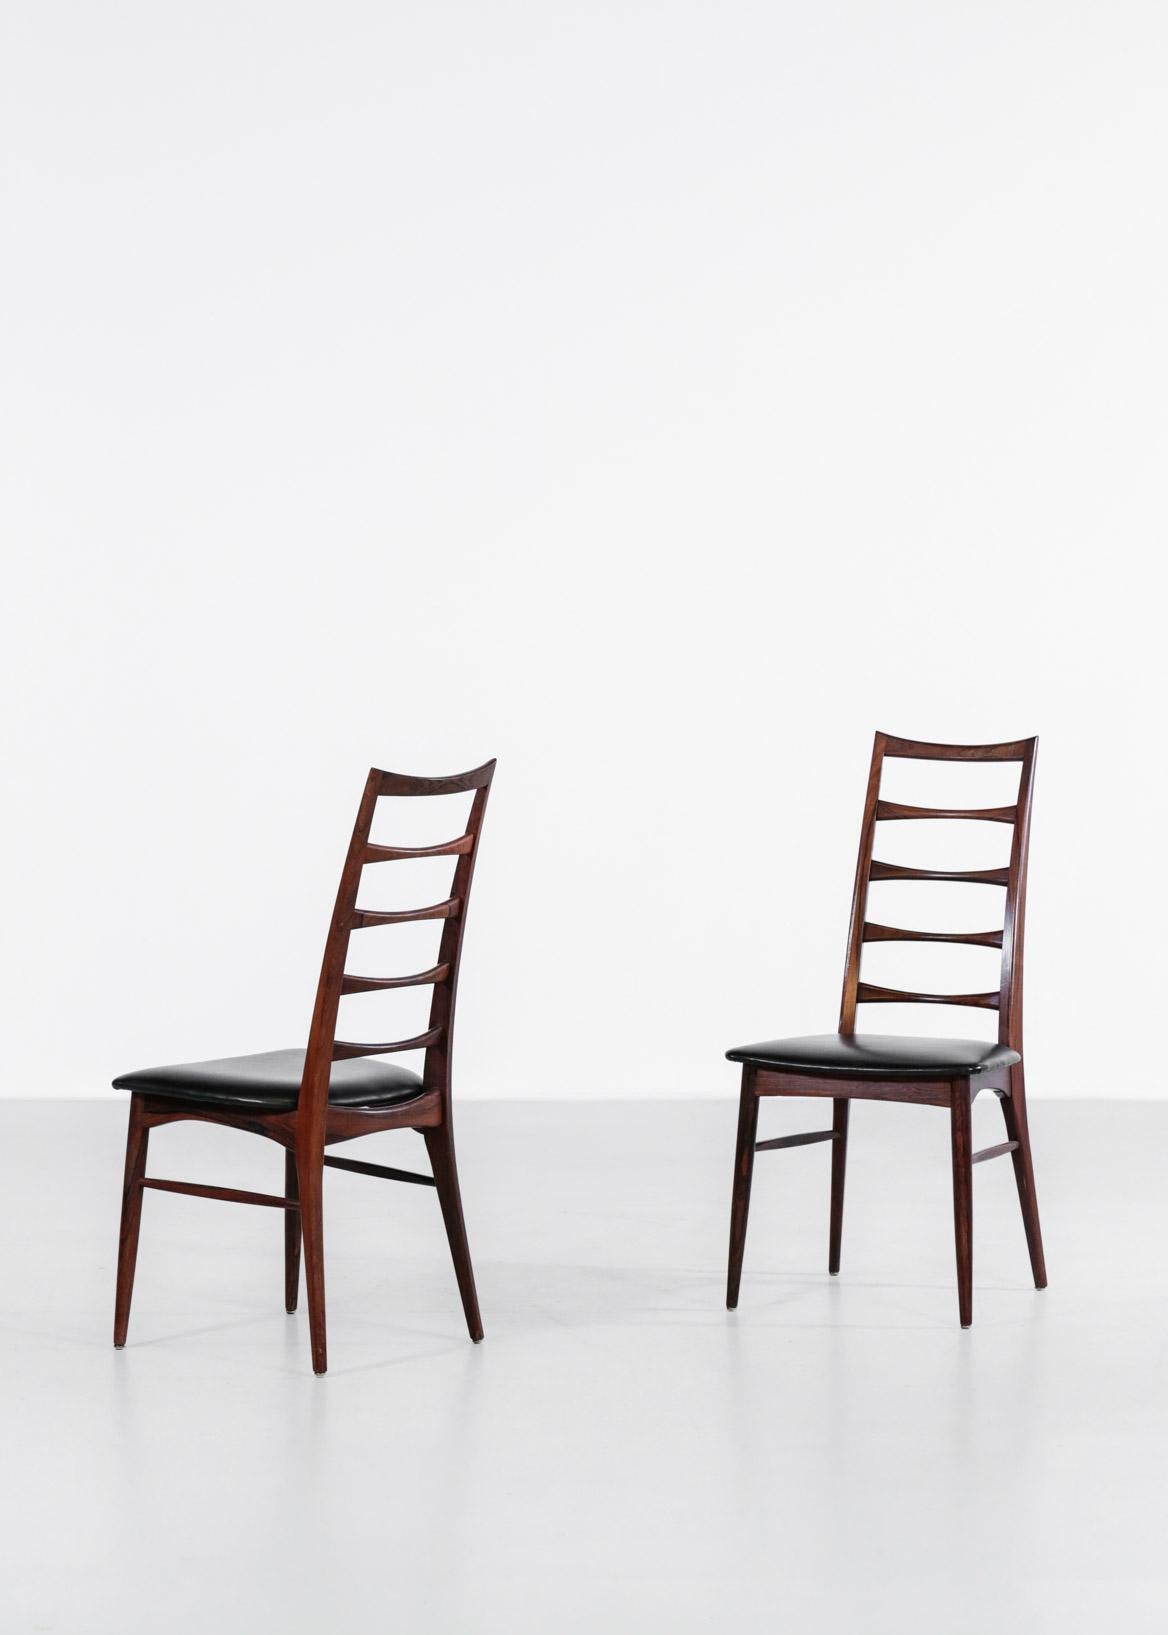 Set of 8 Scandinavian chairs in rosewood designed by Niels Koefoed.